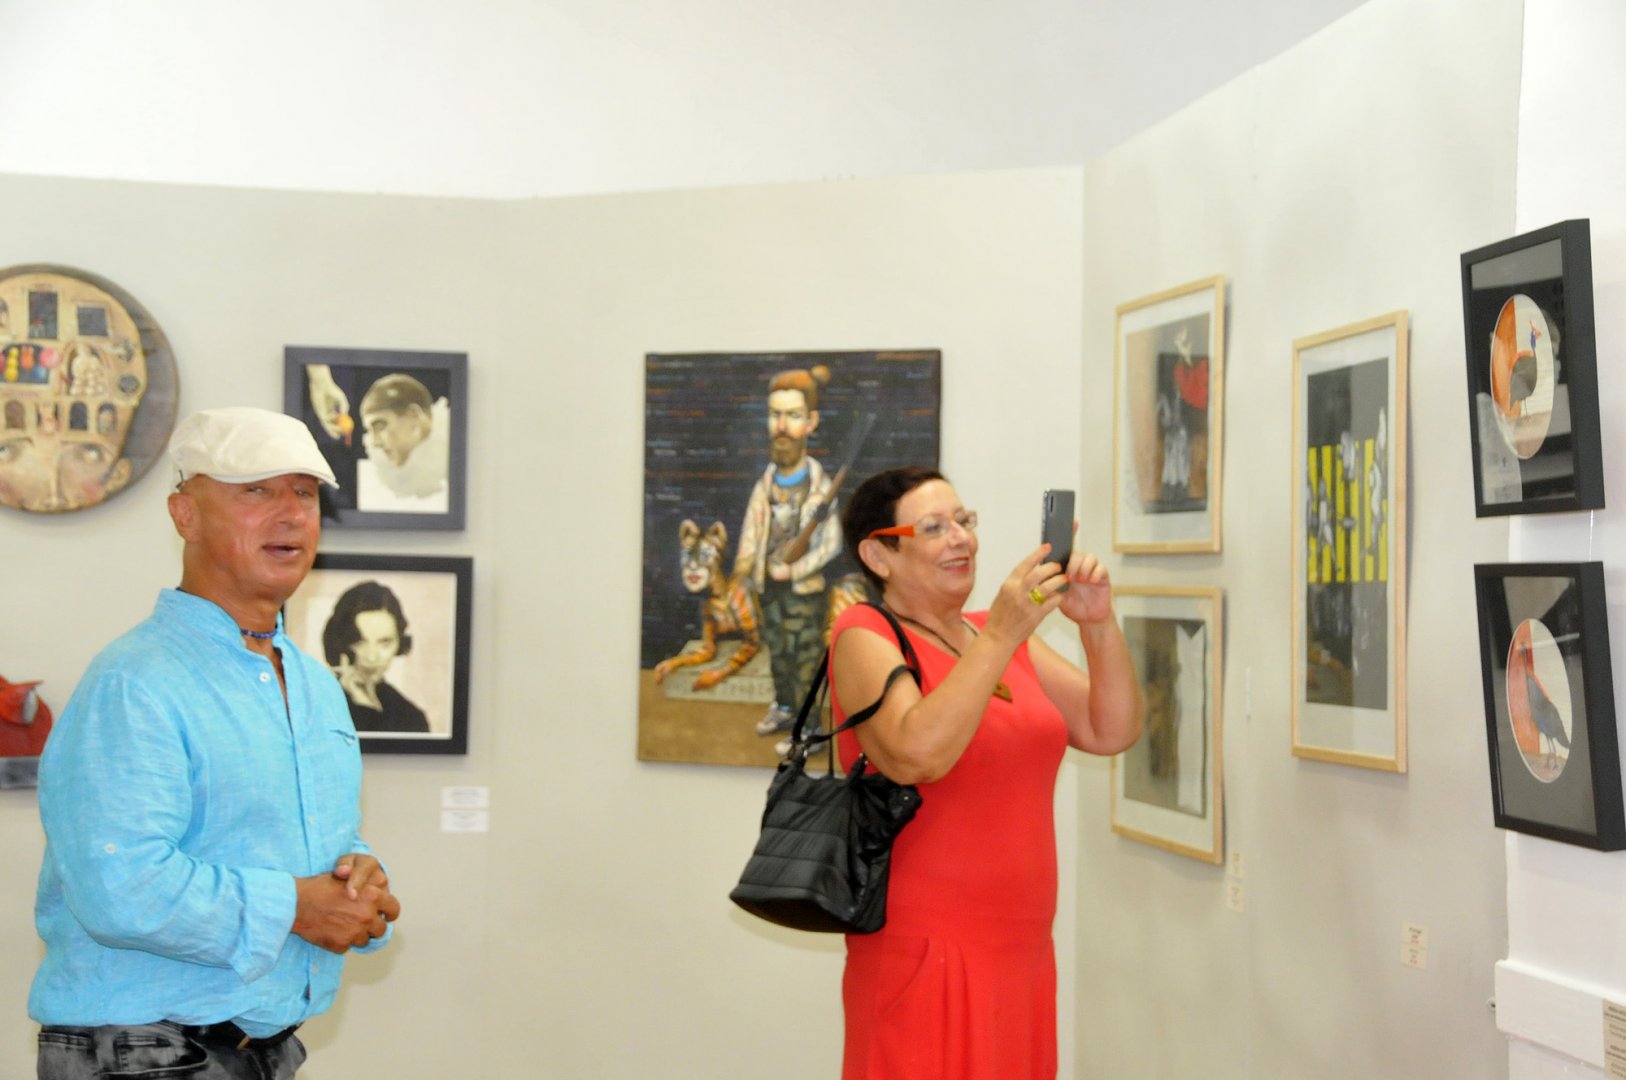 32 български художници показват своя поглед към живота чрез сатирата и самоиронията в изложбата Капки смях. Тя е подредена в бургаската галерия Петко Задгорски. Снимка Лина Главинова